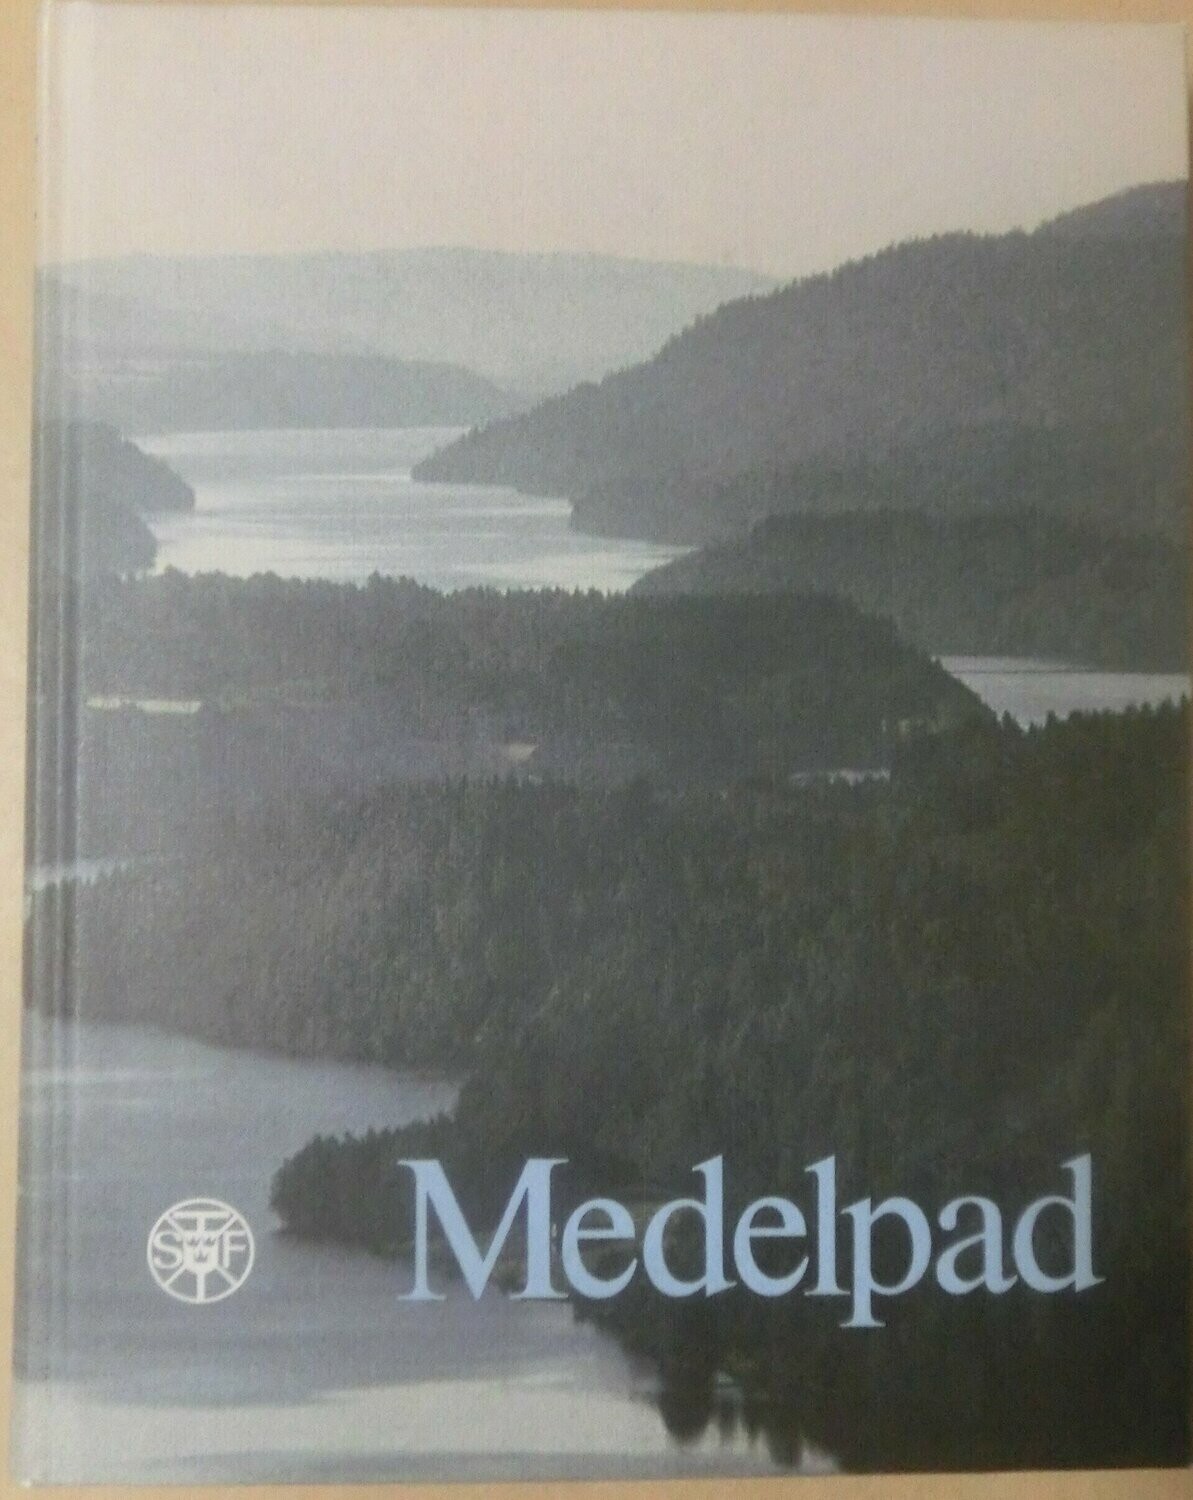 STF Årsskrift 1984 - Medelpad